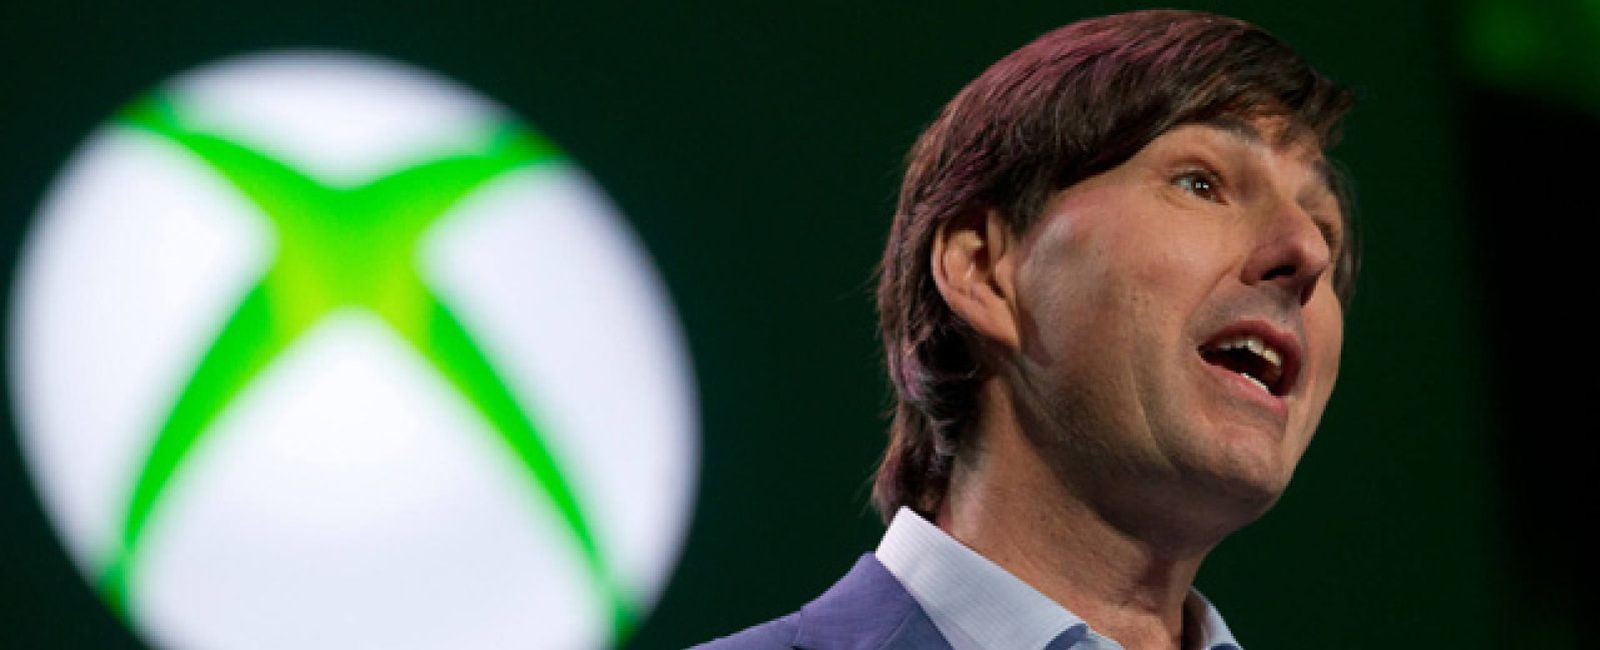 Foto: Zynga contrata como CEO al responsable de Xbox para tratar de reflotar la compañía